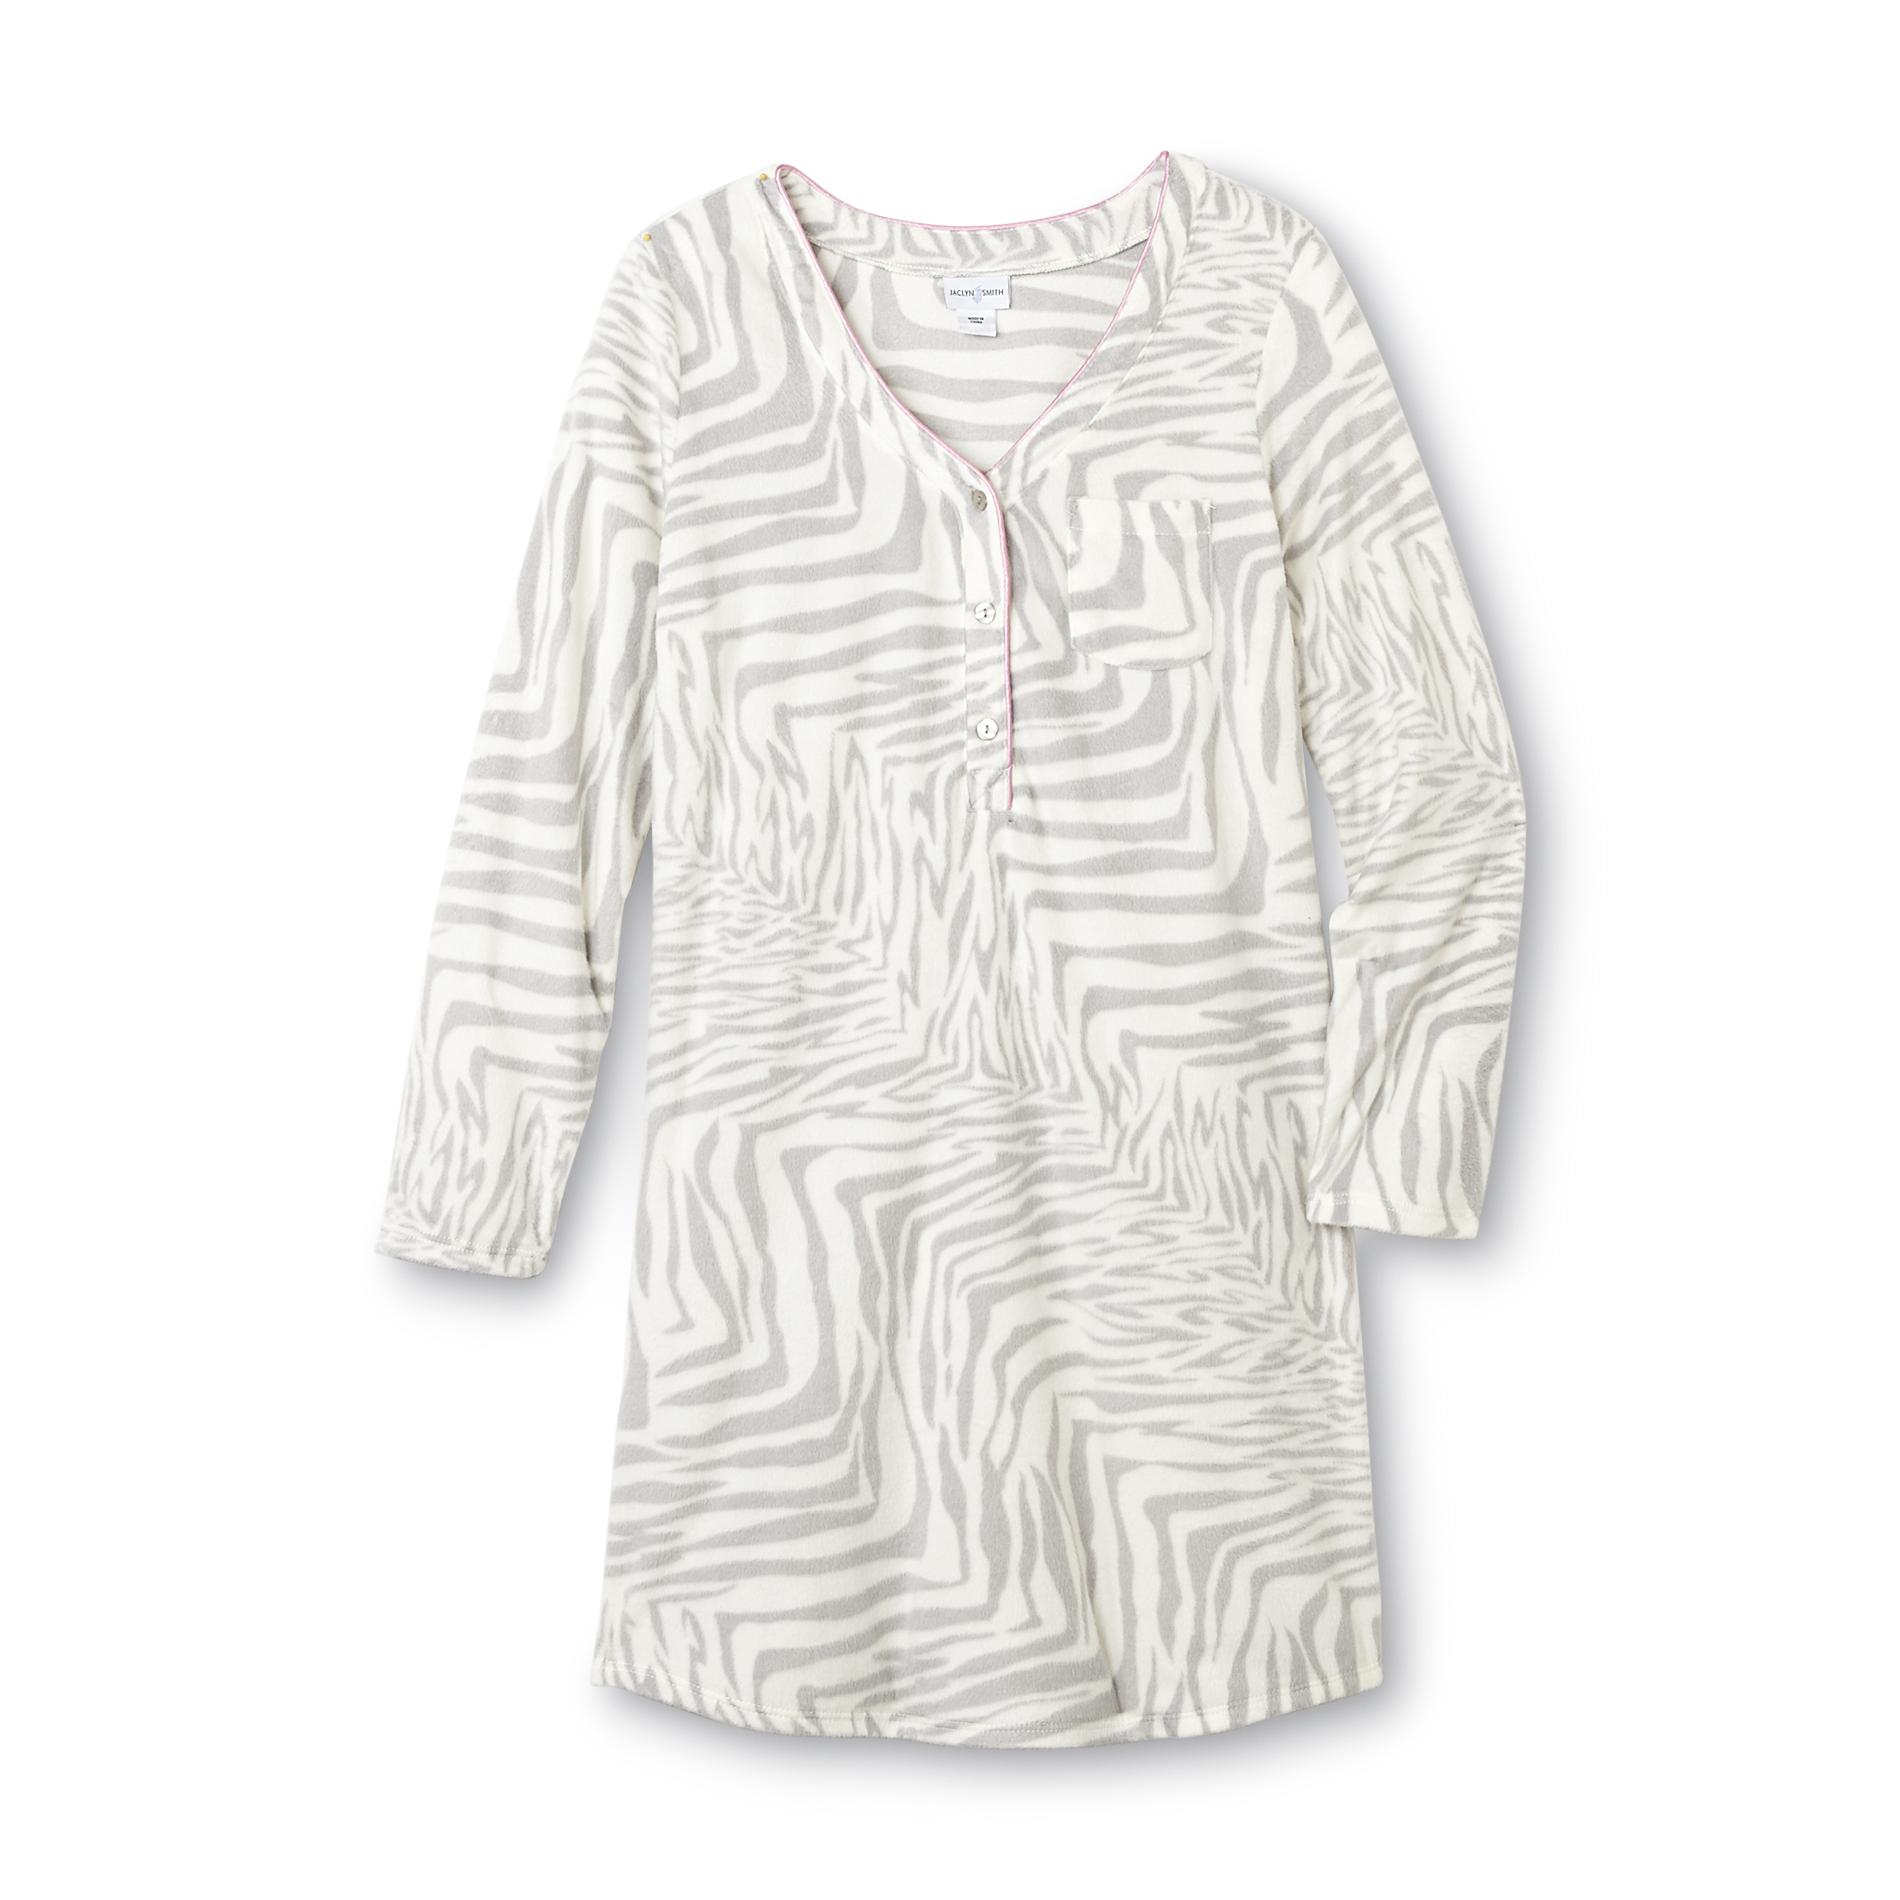 Jaclyn Smith Women's Fleece Nightgown - Zebra Print